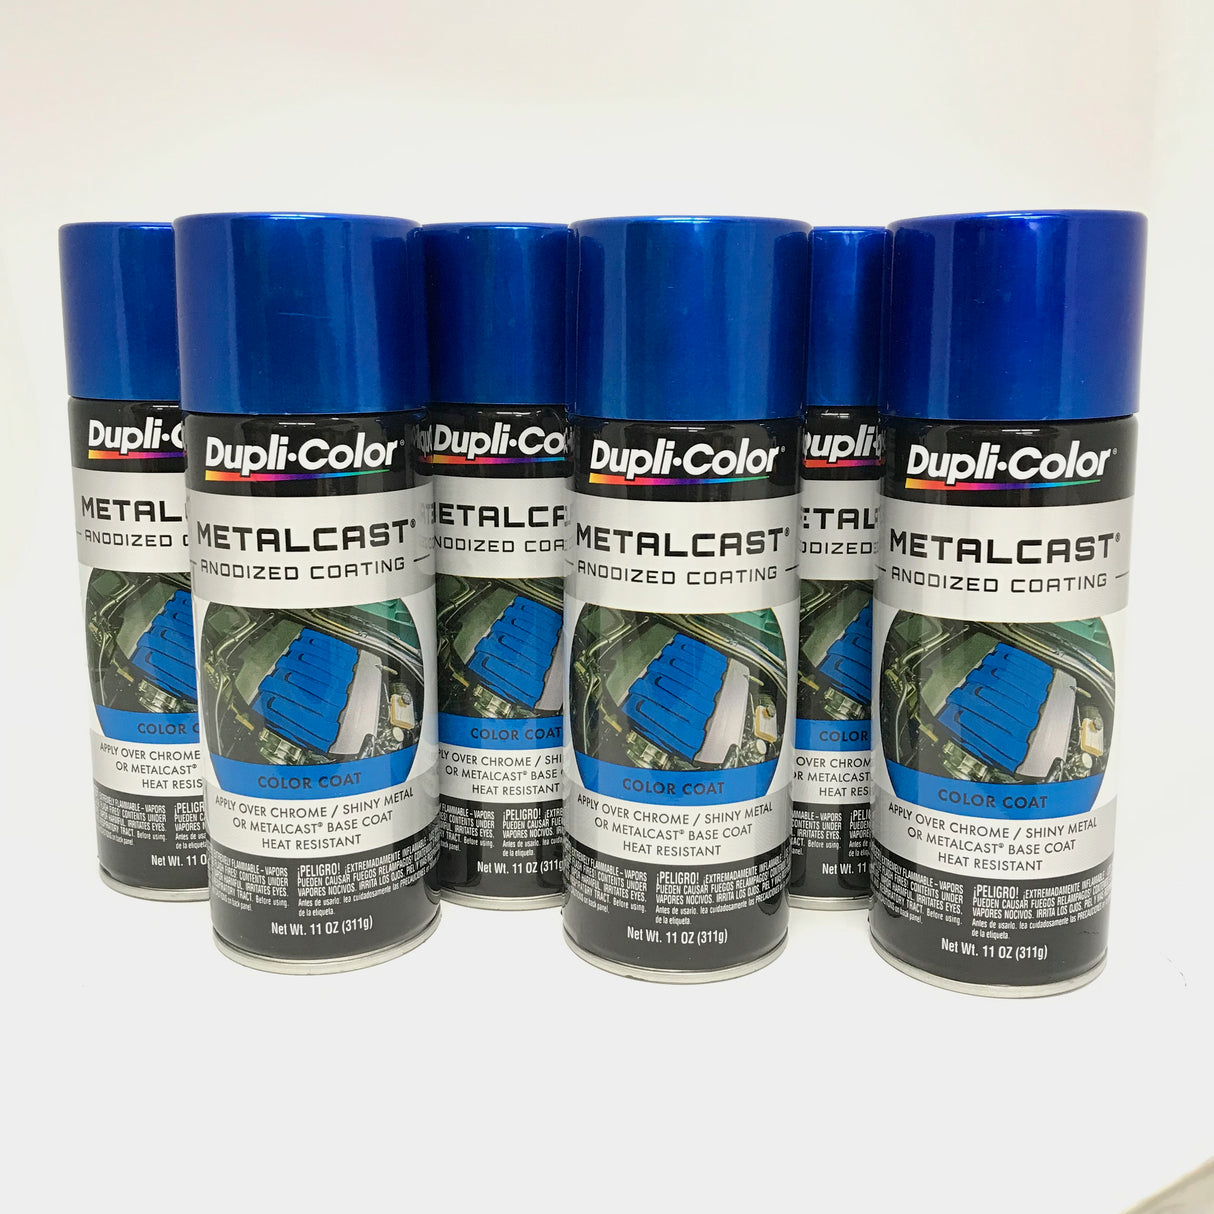 Duplicolor MC201-6 PACK MetalCast BLUE Anodized Heat Resistant Coat - 11 oz Aerosol Paint